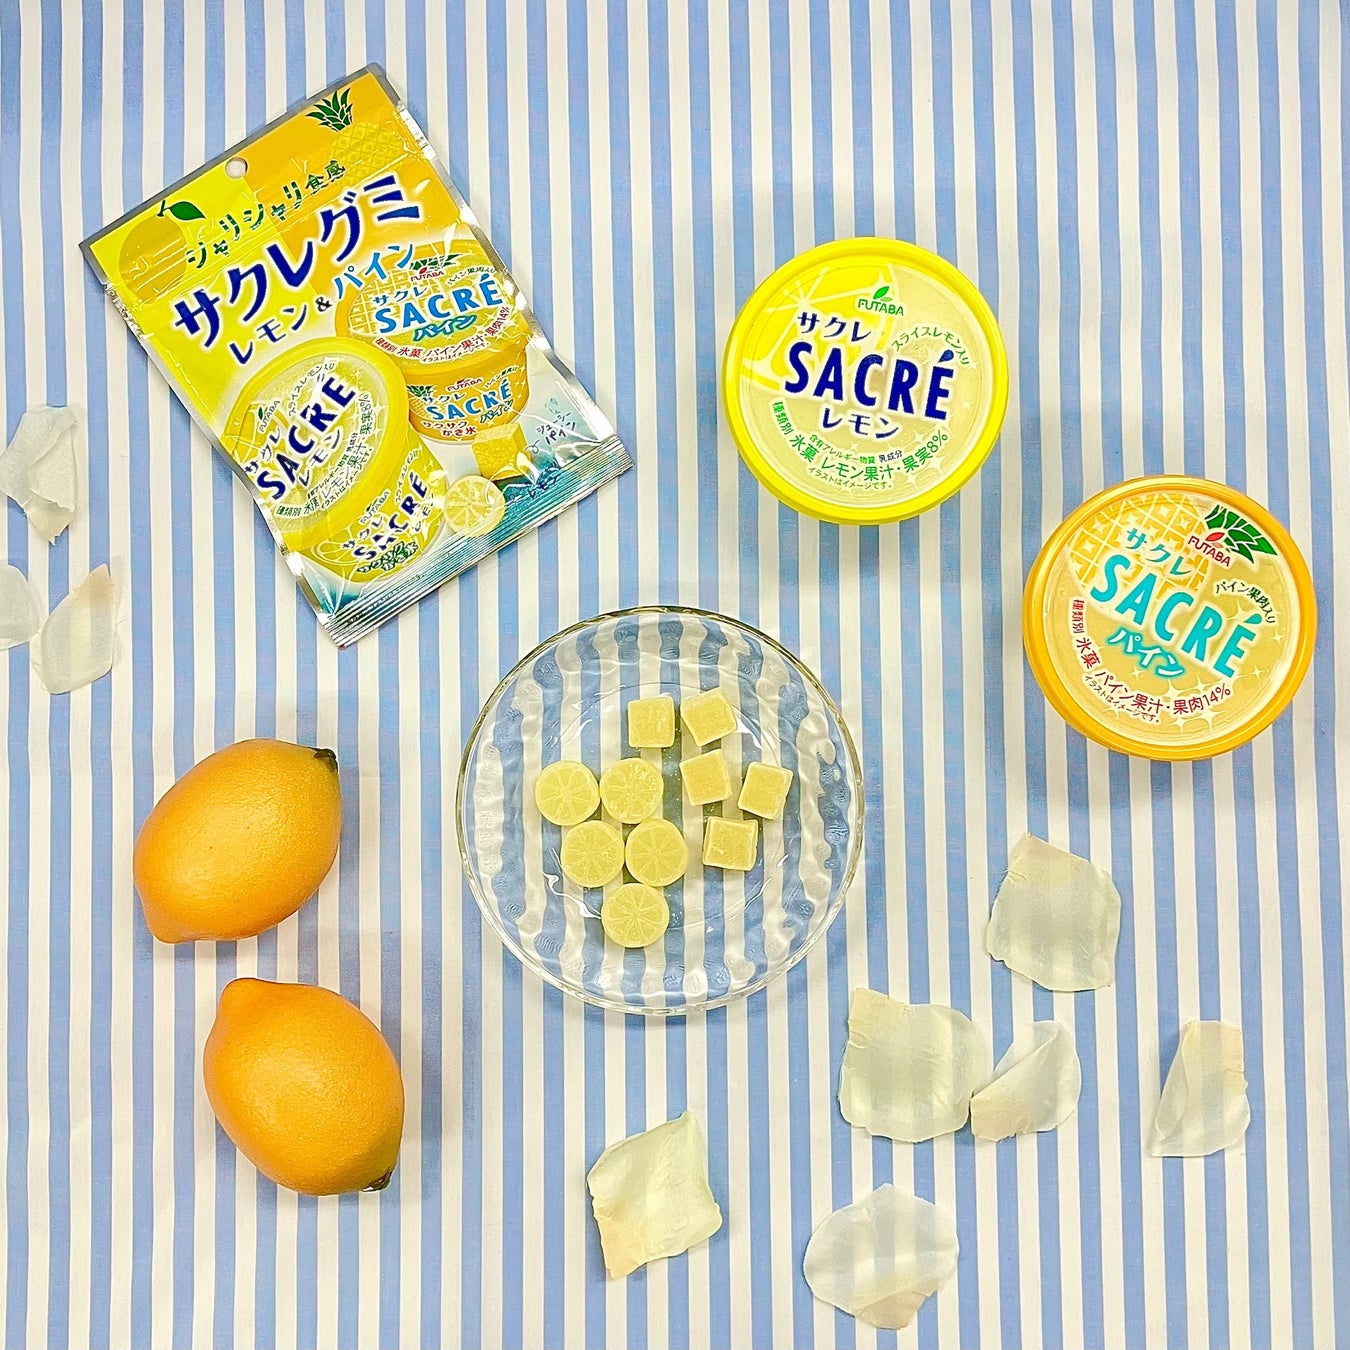 渋谷で一番売れたグミ！夏に食べたくなるあのアイス「サクレ」をグミにした「サクレグミ レモン&パイン」が新発売！シャリシャリ食感で美味しいアソートグミを2023年6月13日(火)より販売開始いたします。